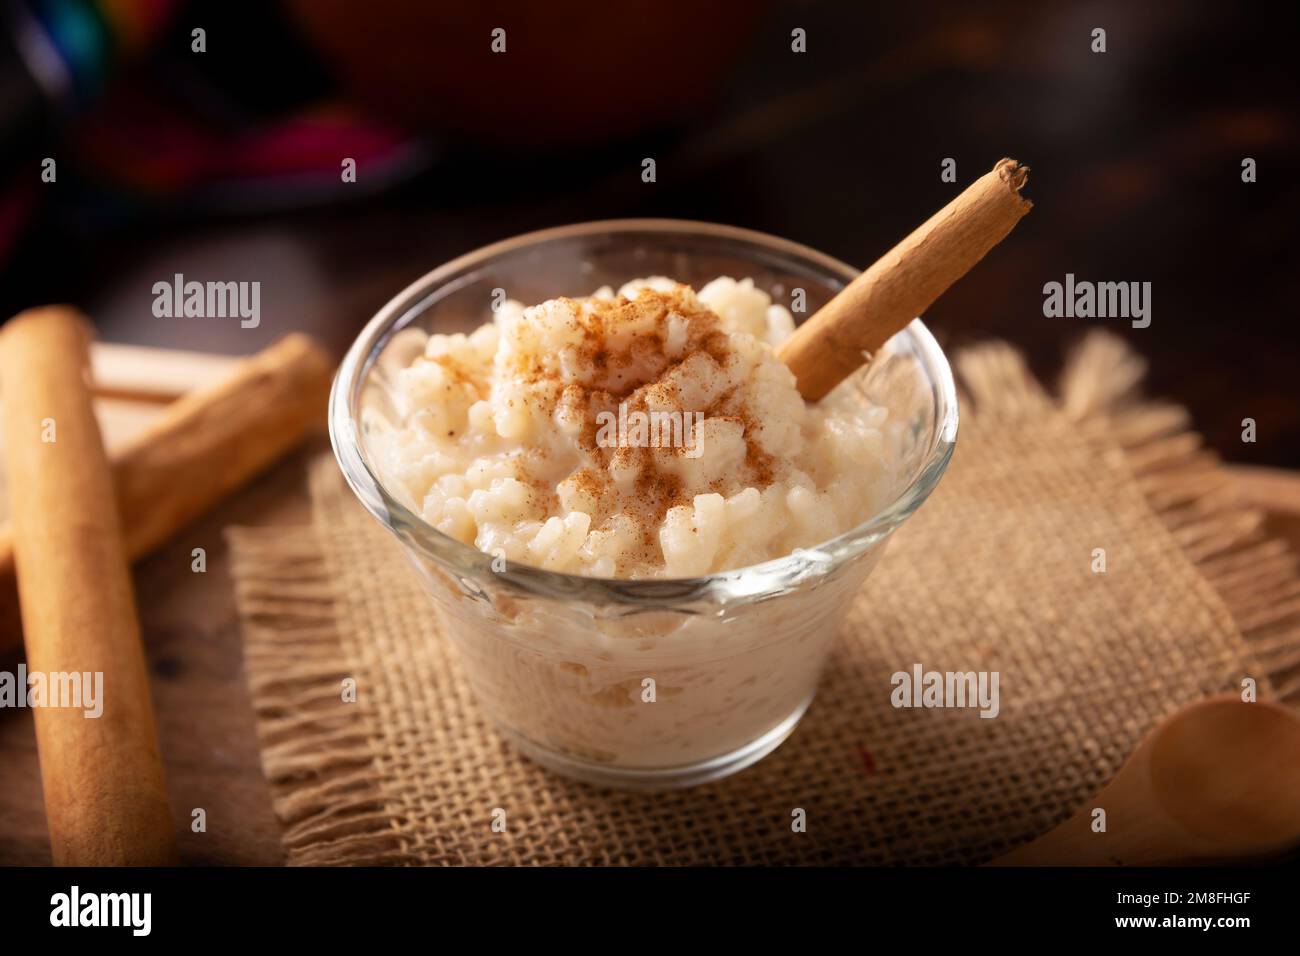 Riz au lait. Plat sucré fait en cuisant du riz dans le lait et le sucre, certaines recettes incluent la cannelle, la vanille ou d'autres ingrédients, c'est un très facile desseur Banque D'Images